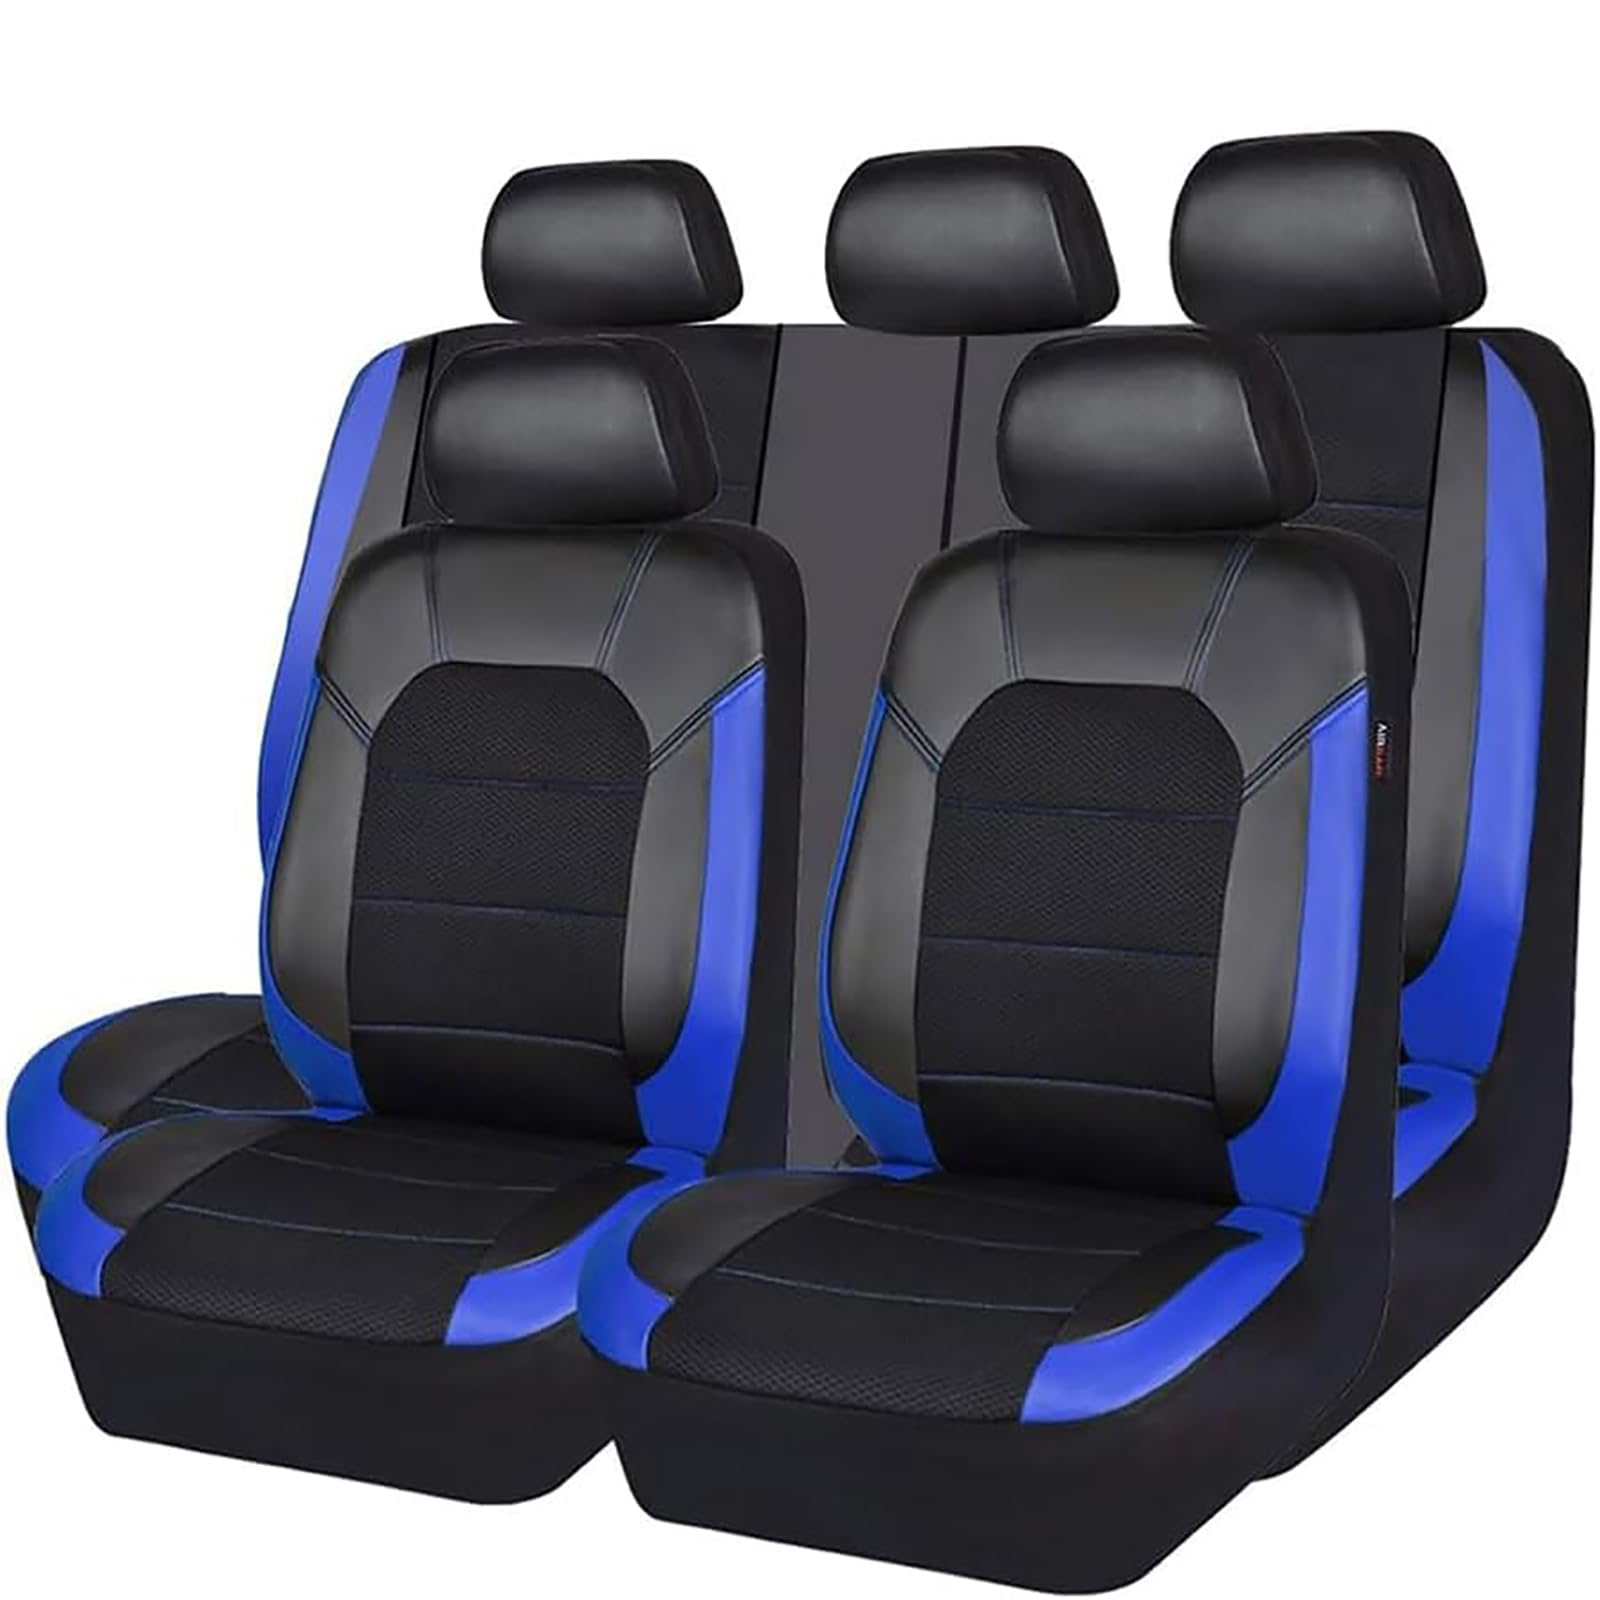 EYHQKRTR Auto Leder Sitzkissen Für Suzuki SX4 2007-2022, 5 Sitzer Full Set SitzbezüGe Schonbezug Vorne Rückbank Sitzschutz Compatible Airbag Innenraum Zubehör,C/Blue von EYHQKRTR